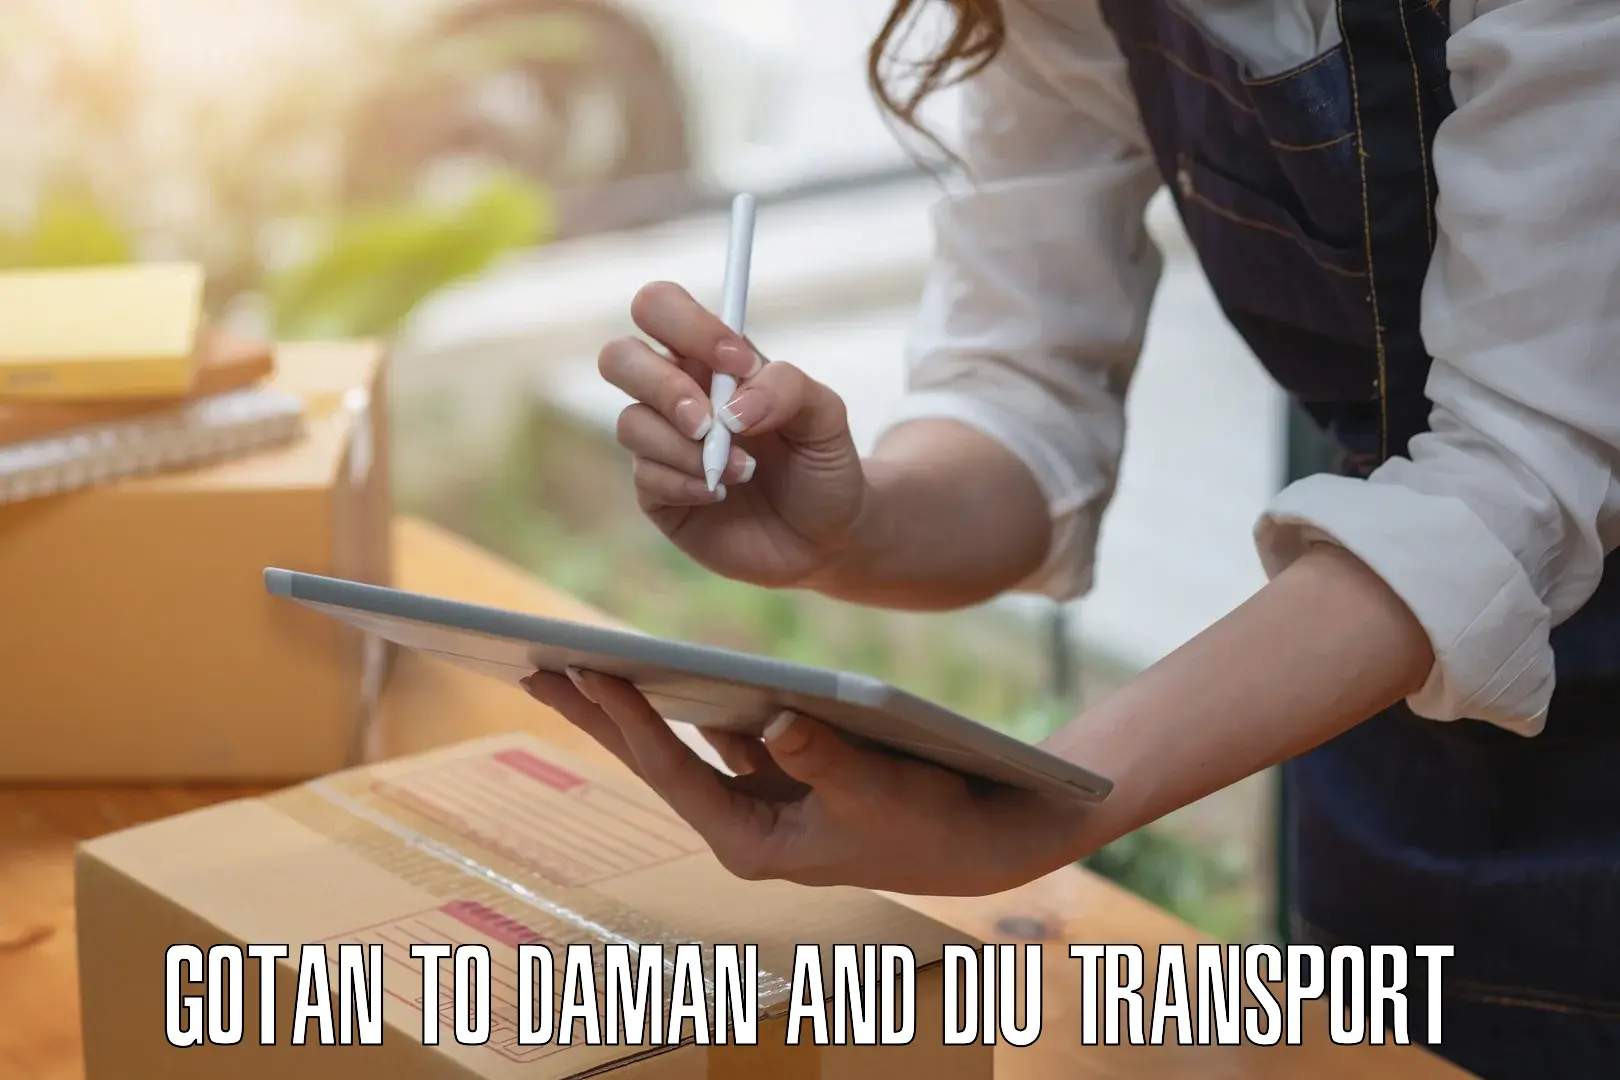 Land transport services Gotan to Daman and Diu